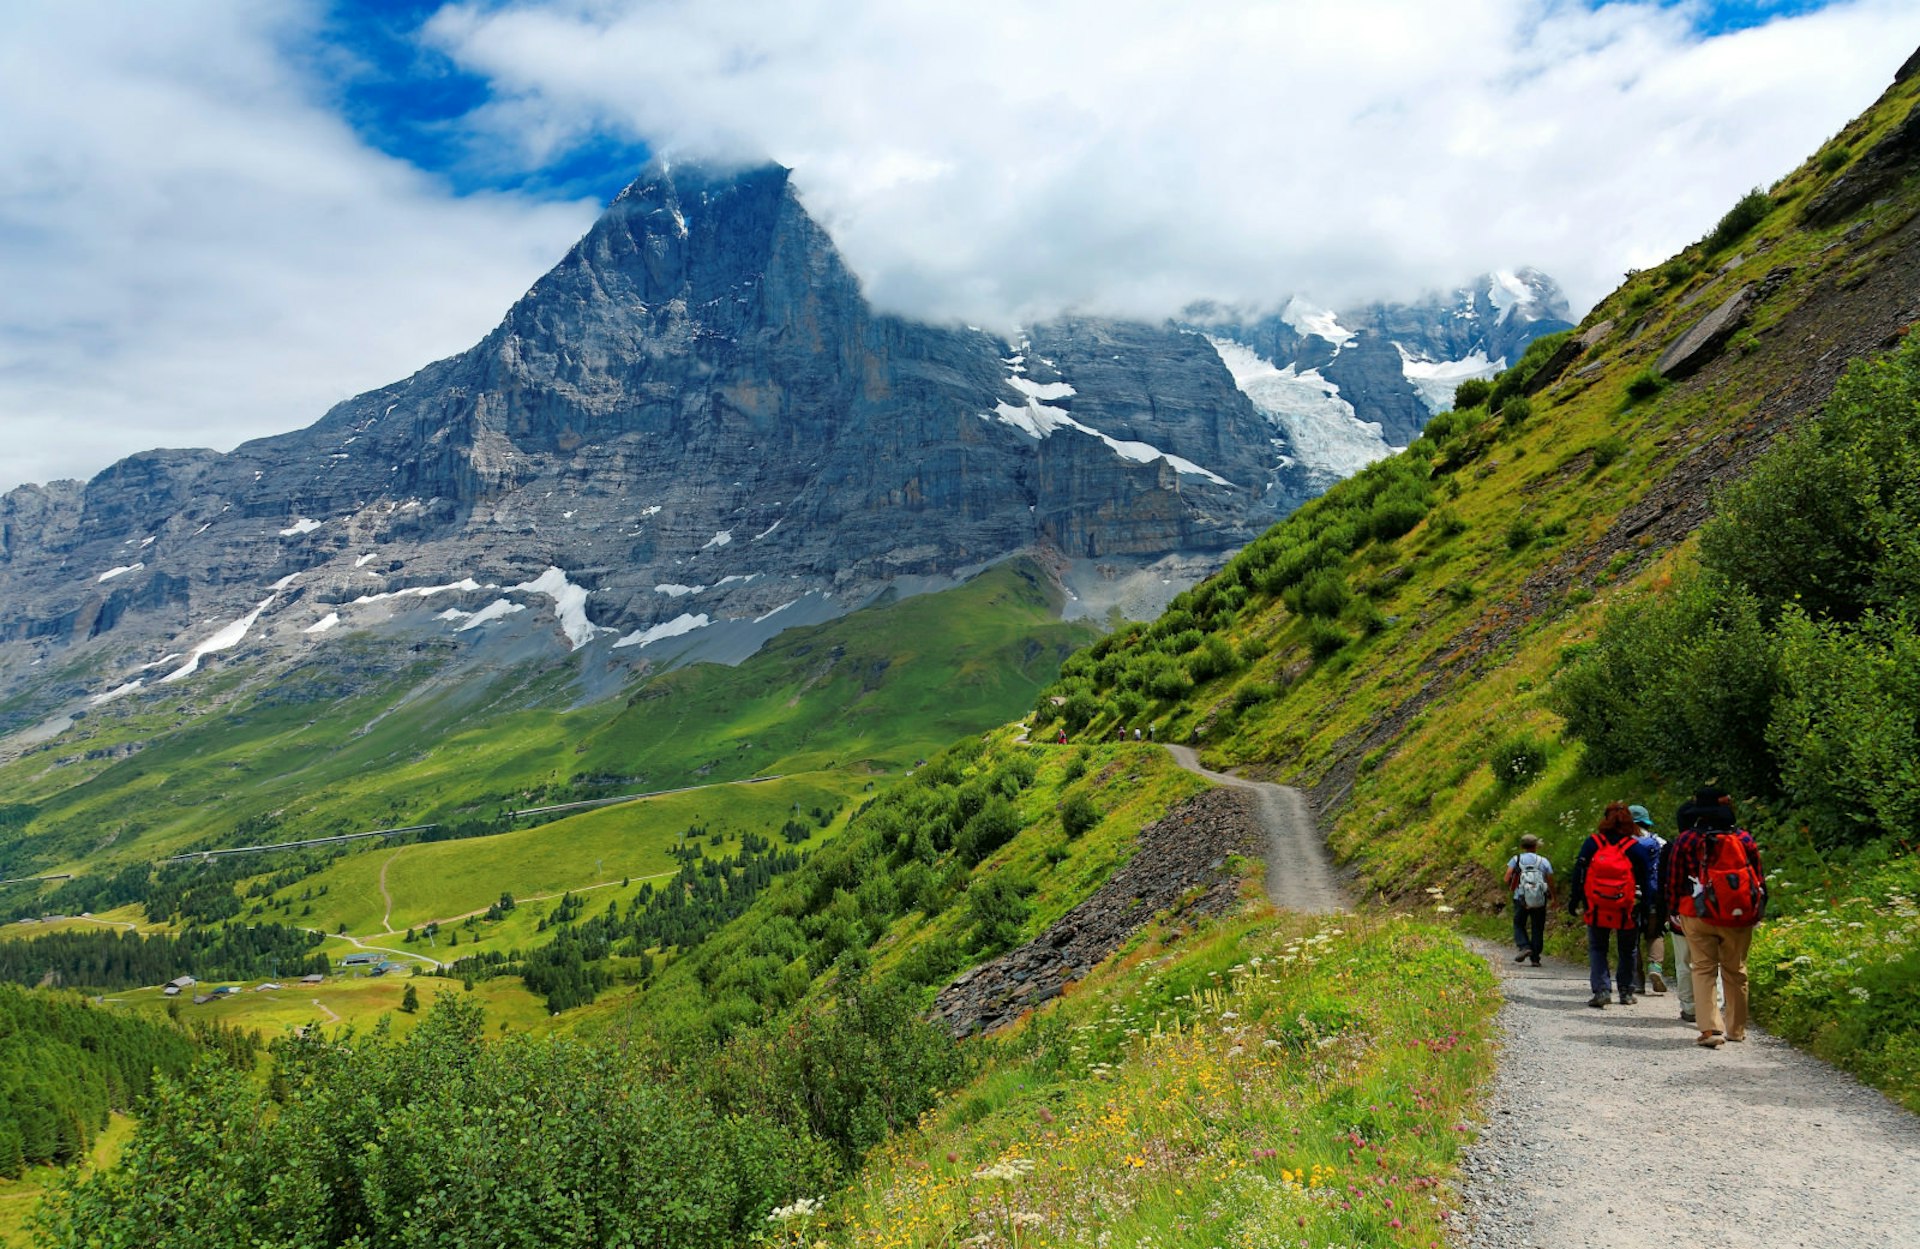 Hikers on a mountainside trail from Männlichen to Kleine Scheidegg © CHEN MIN CHUN/Shutterstock